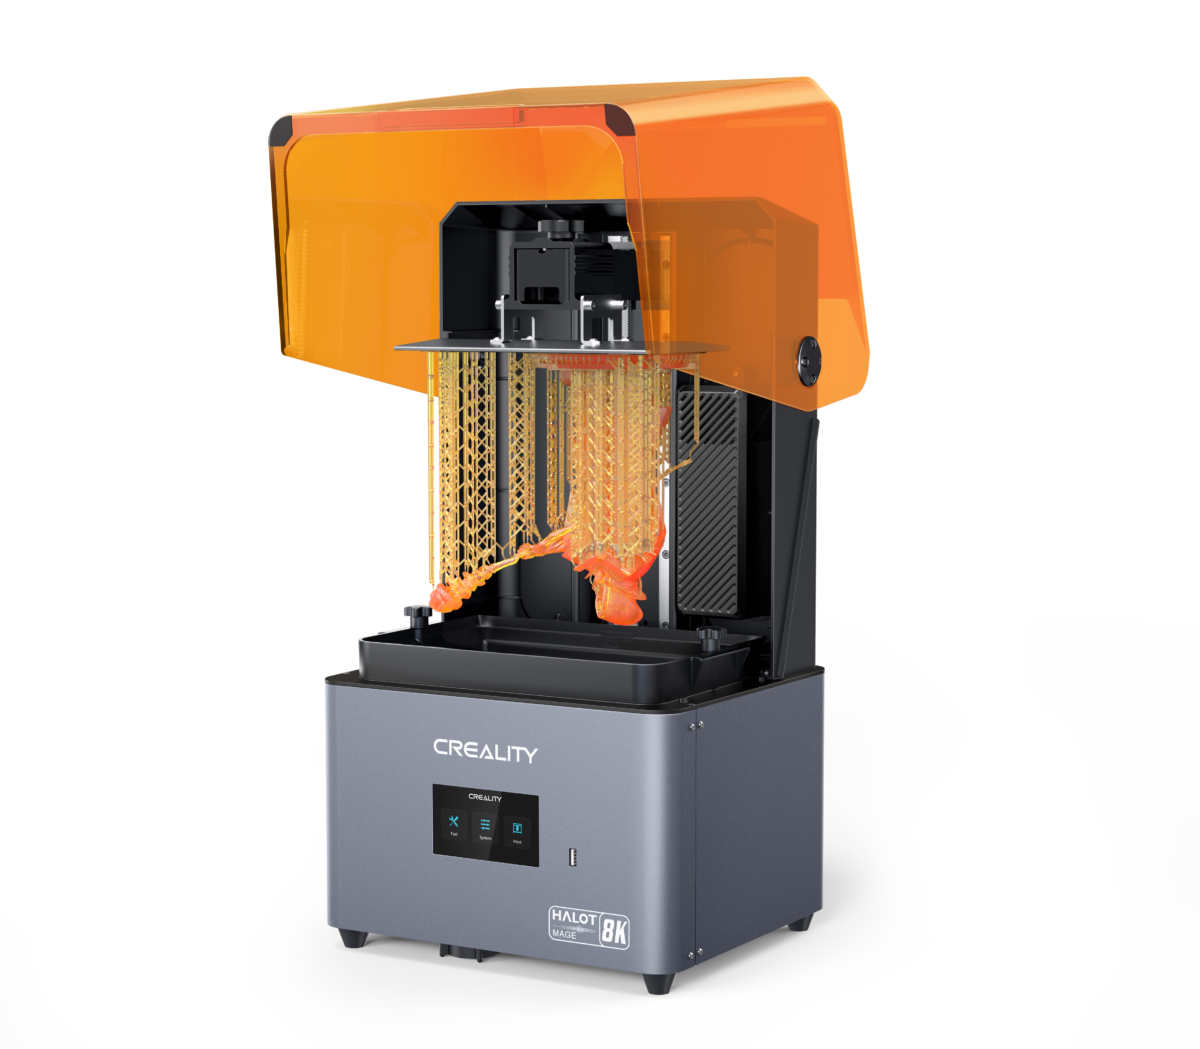 HALOT MAGE Resin 3D Printer